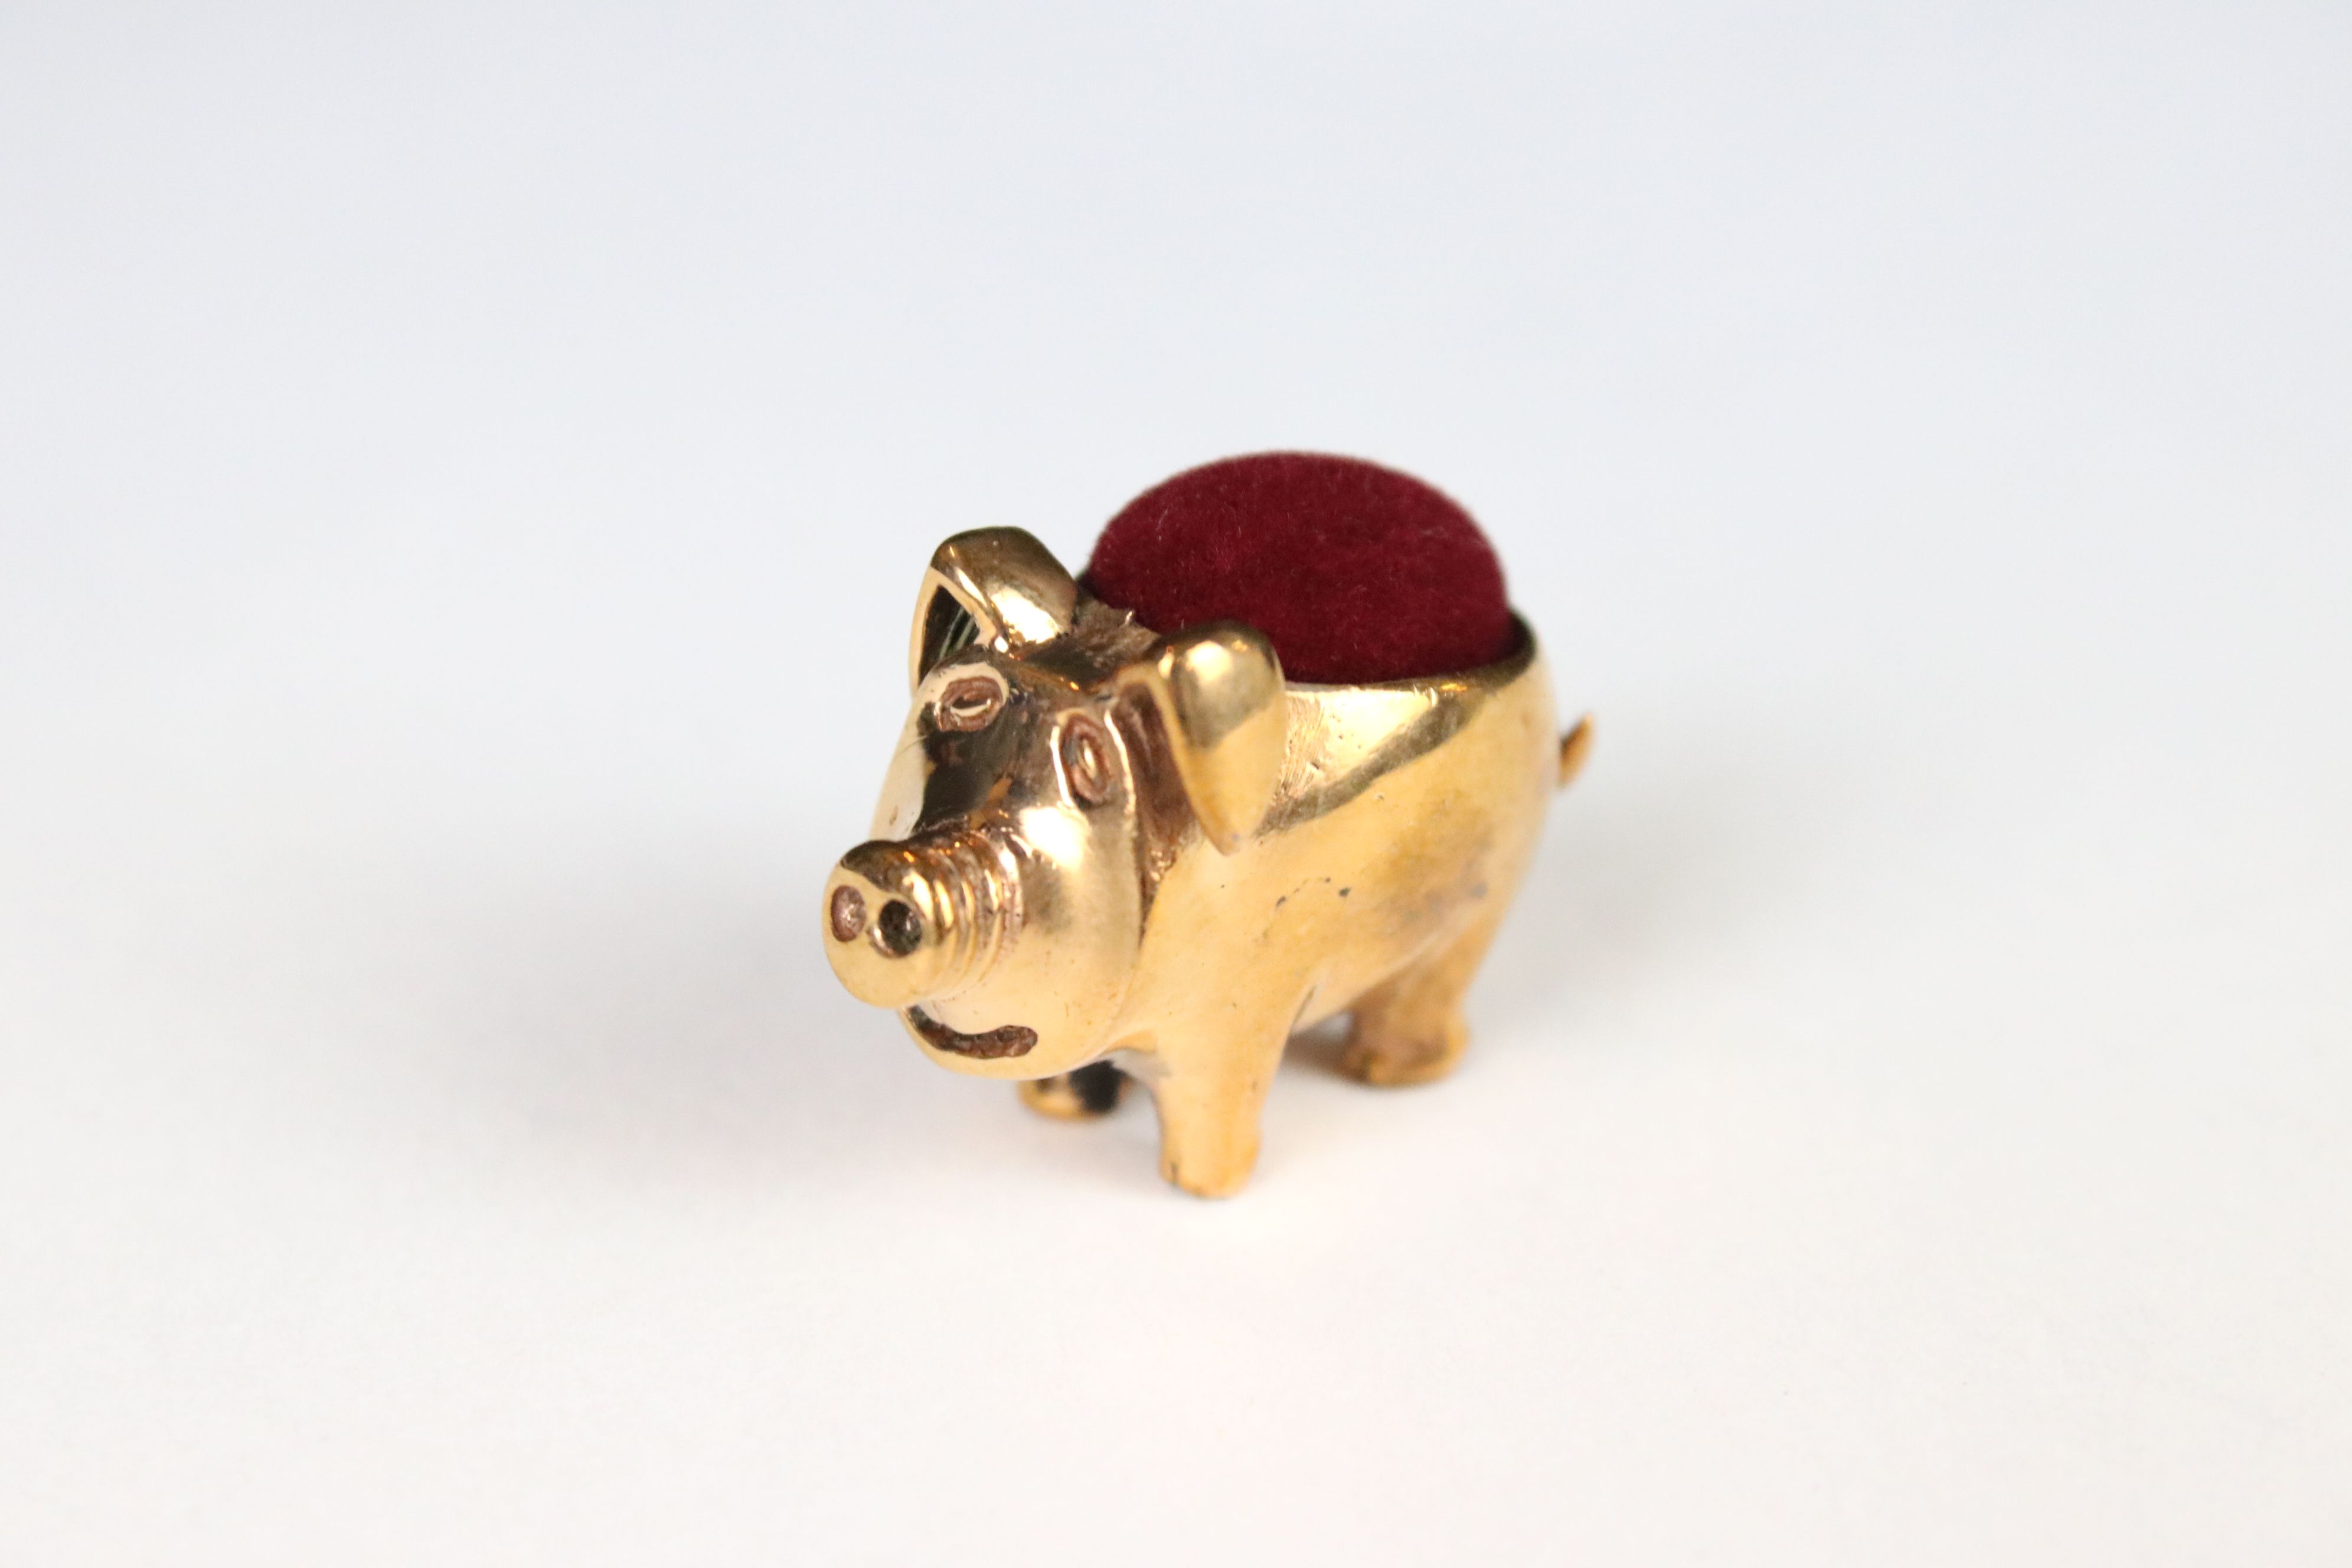 A copper pig pincushion.